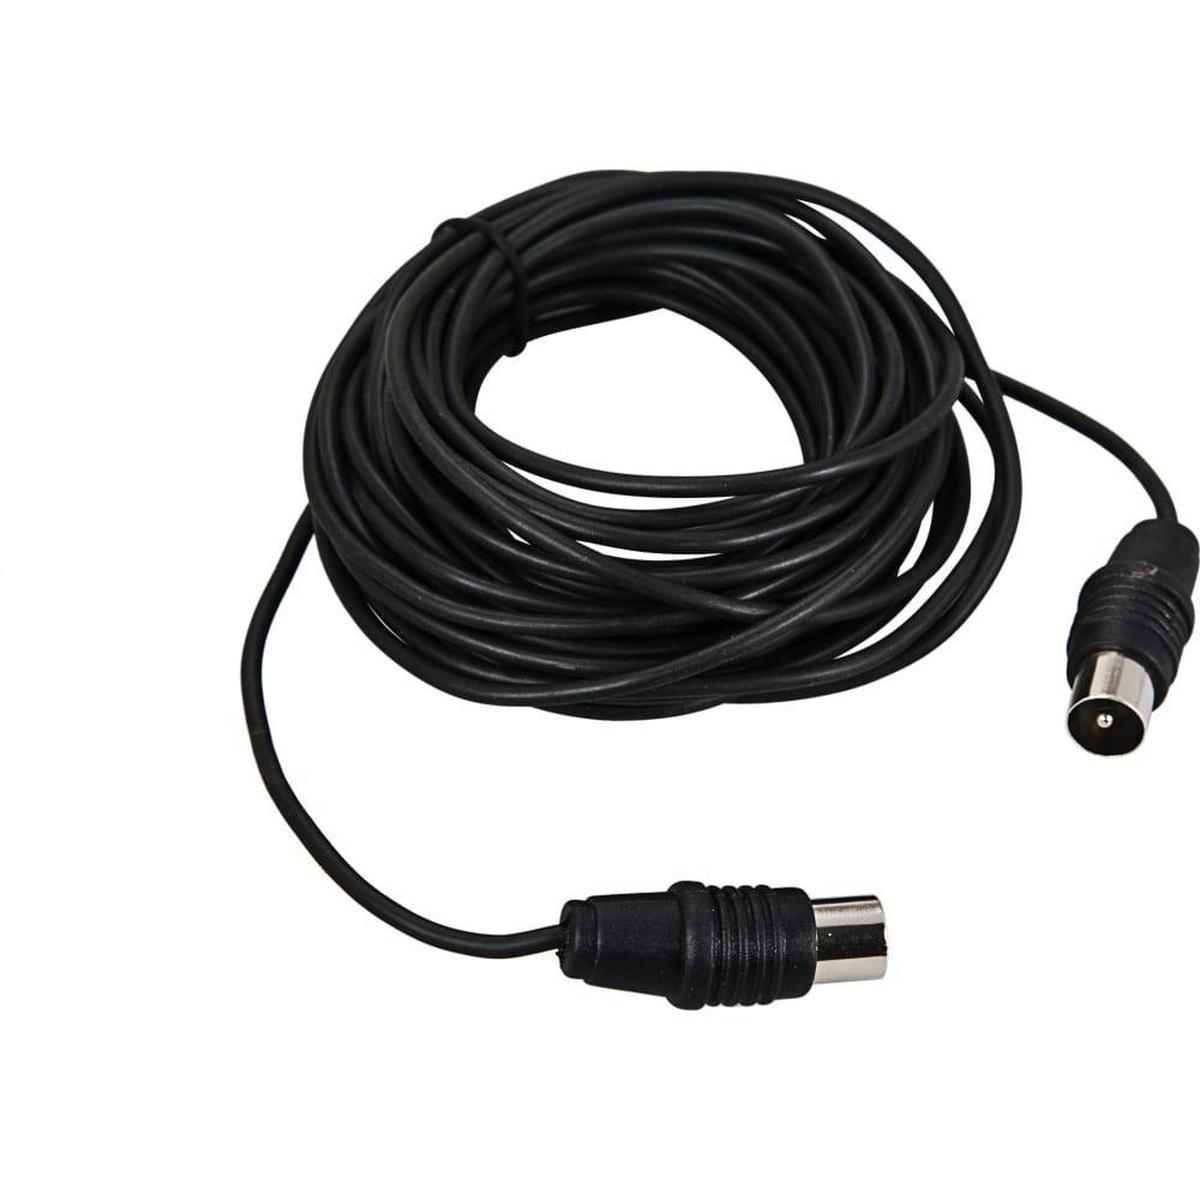 17-5021, ВЧ кабель, ТВ штекер - ТВ штекер, длина 1,5 метра, черный